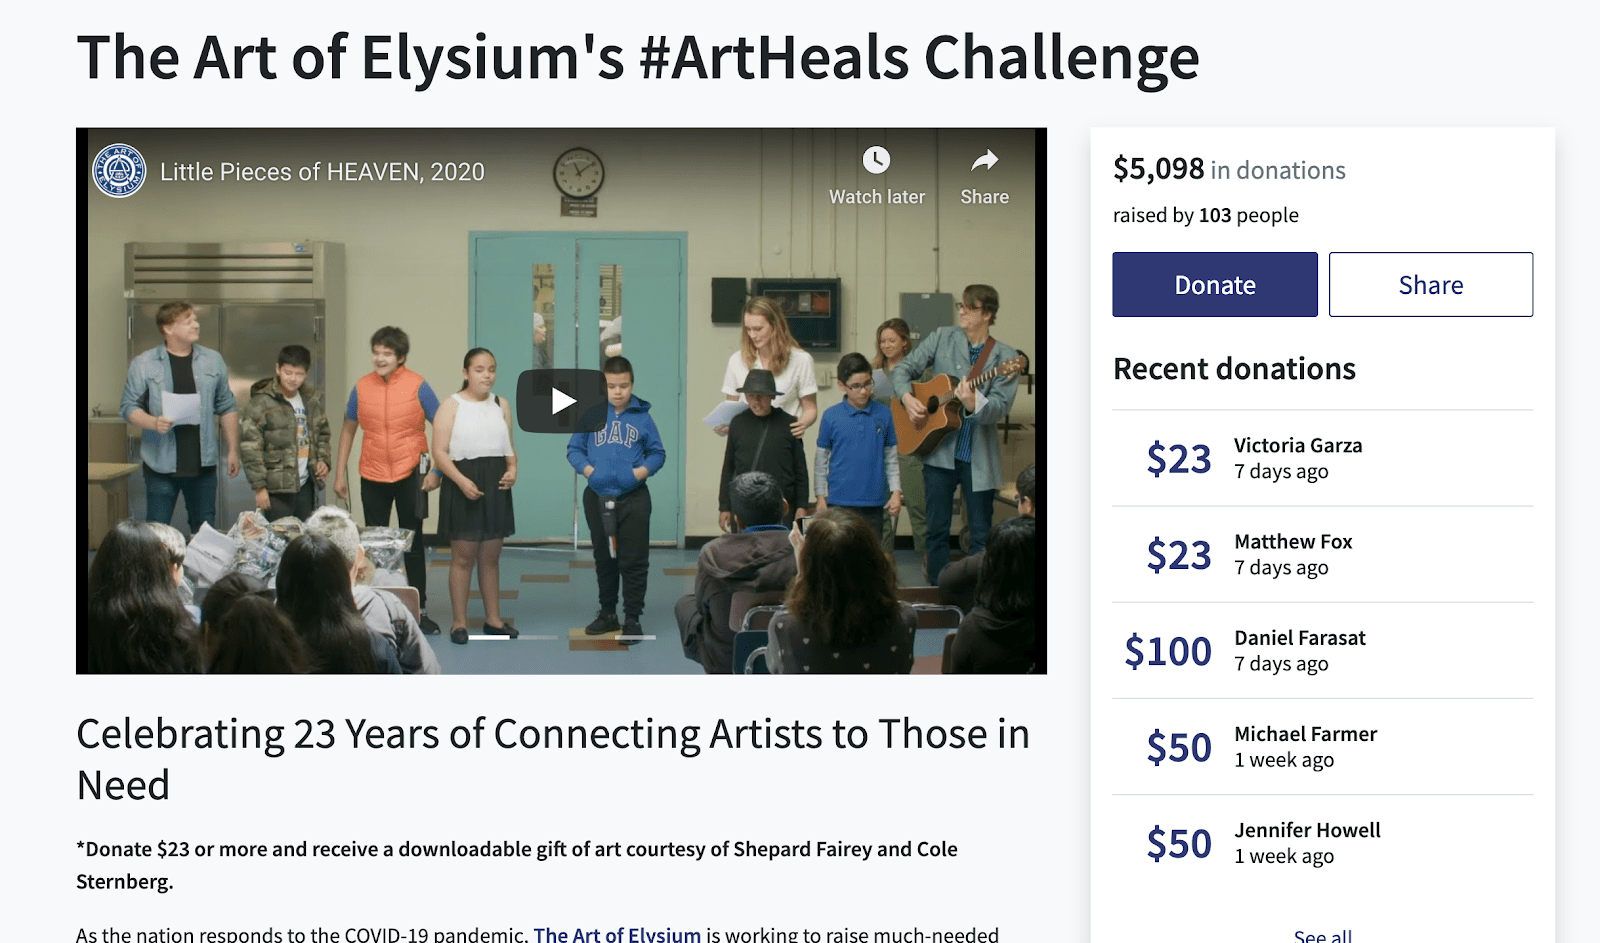 The Art of Elysium’s Art Heals Challenge Video